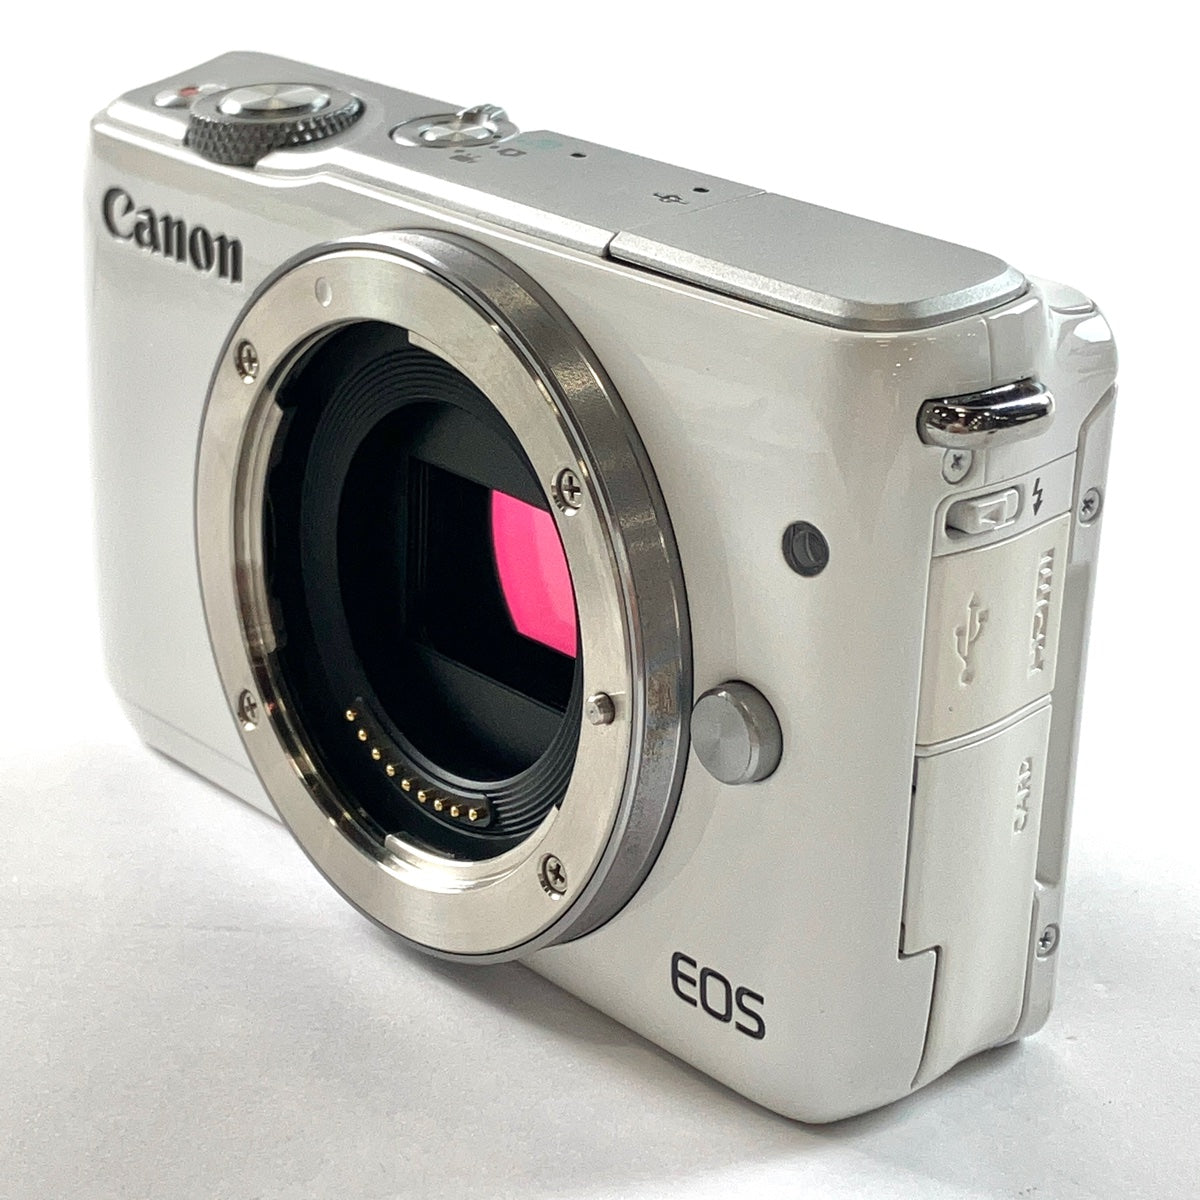 キヤノンCanon ミラーレス一眼カメラ EOS M10 ボディ(ホワイト)